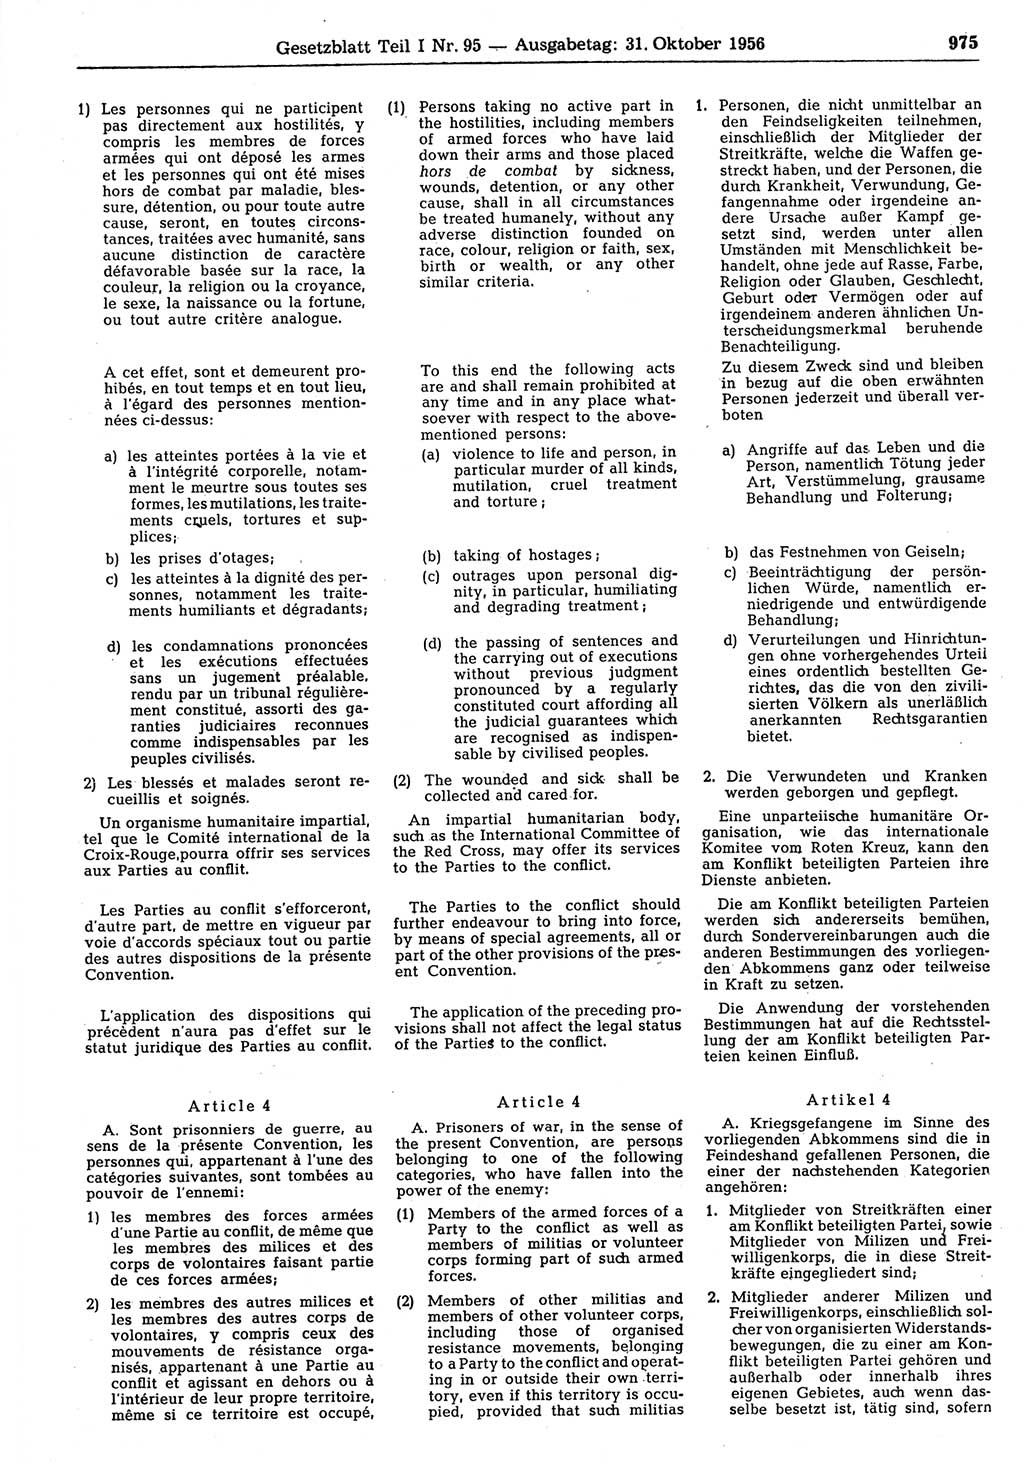 Gesetzblatt (GBl.) der Deutschen Demokratischen Republik (DDR) Teil Ⅰ 1956, Seite 975 (GBl. DDR Ⅰ 1956, S. 975)